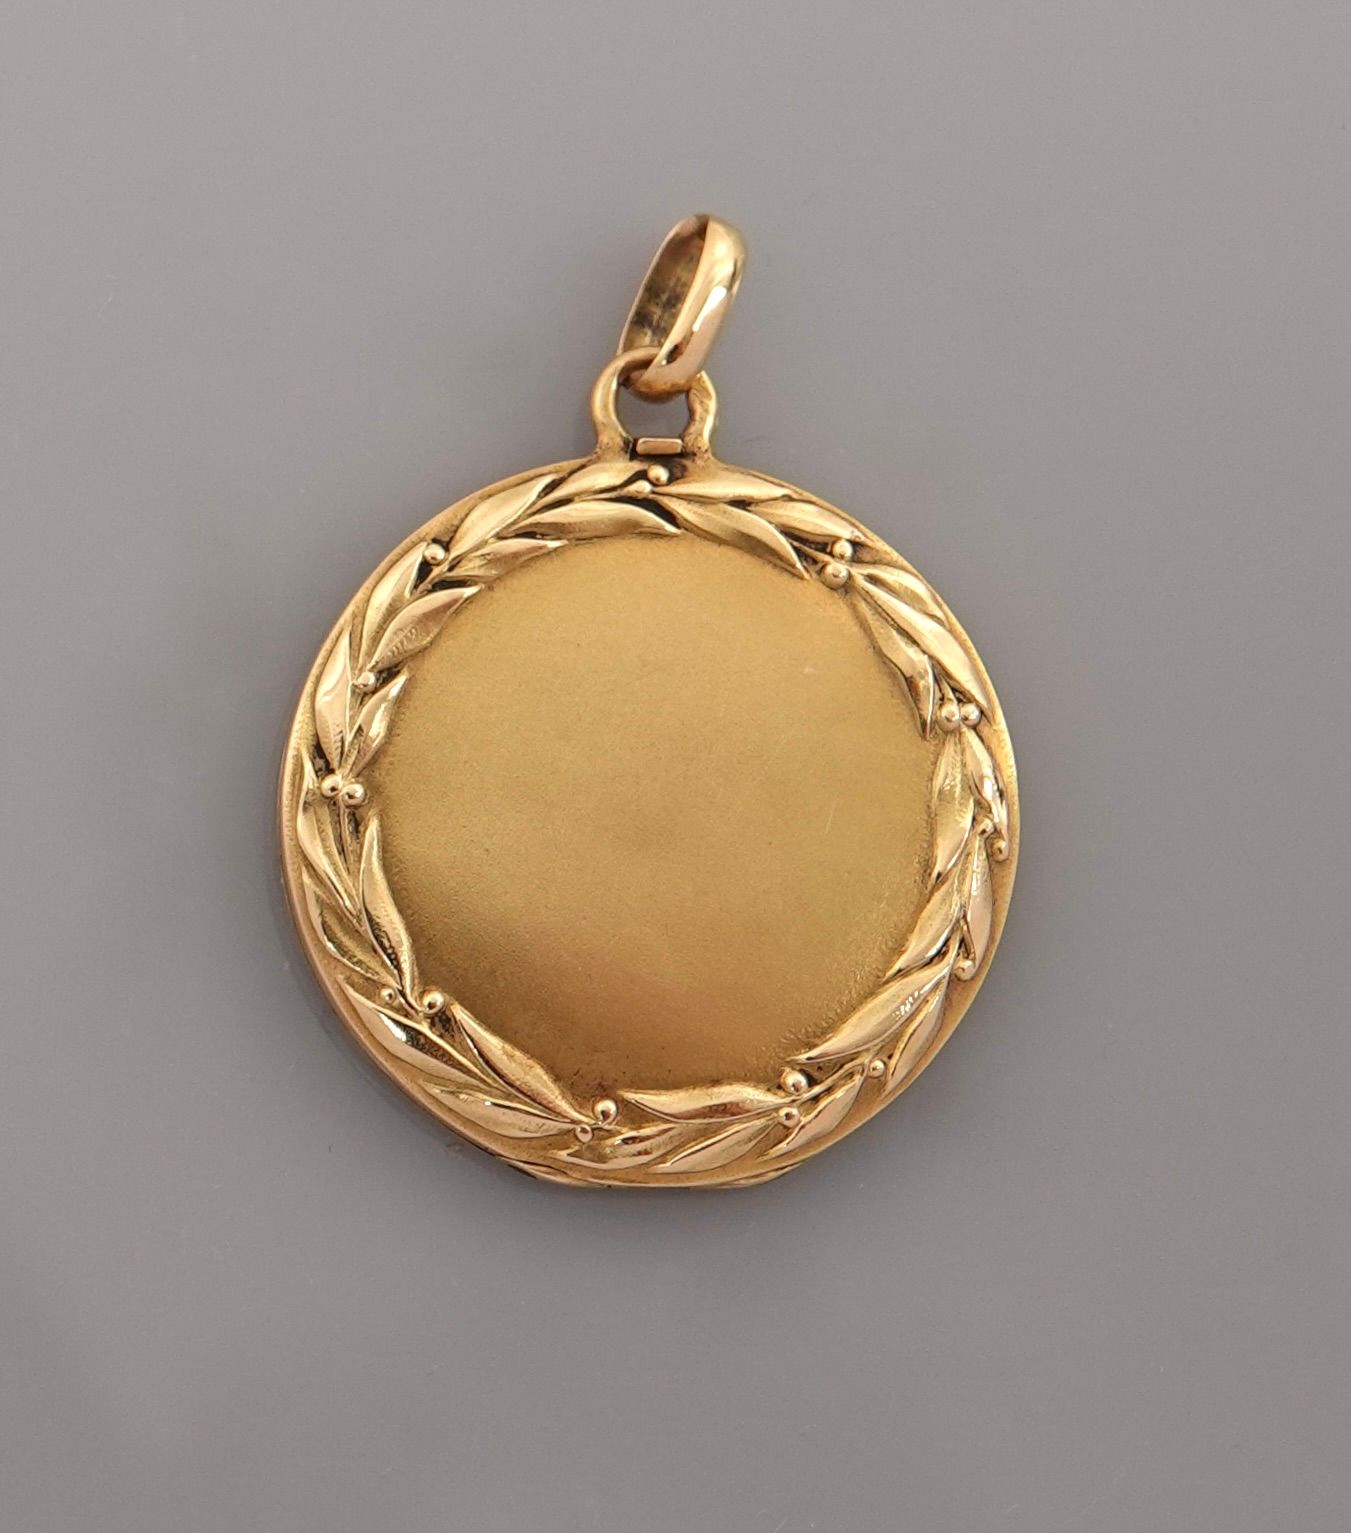 Null 圆形奖章，黄金材质的开口 "照片架"，750毫米，有叶状装饰，直径24毫米，约1900年，重量：4.8克，毛重。